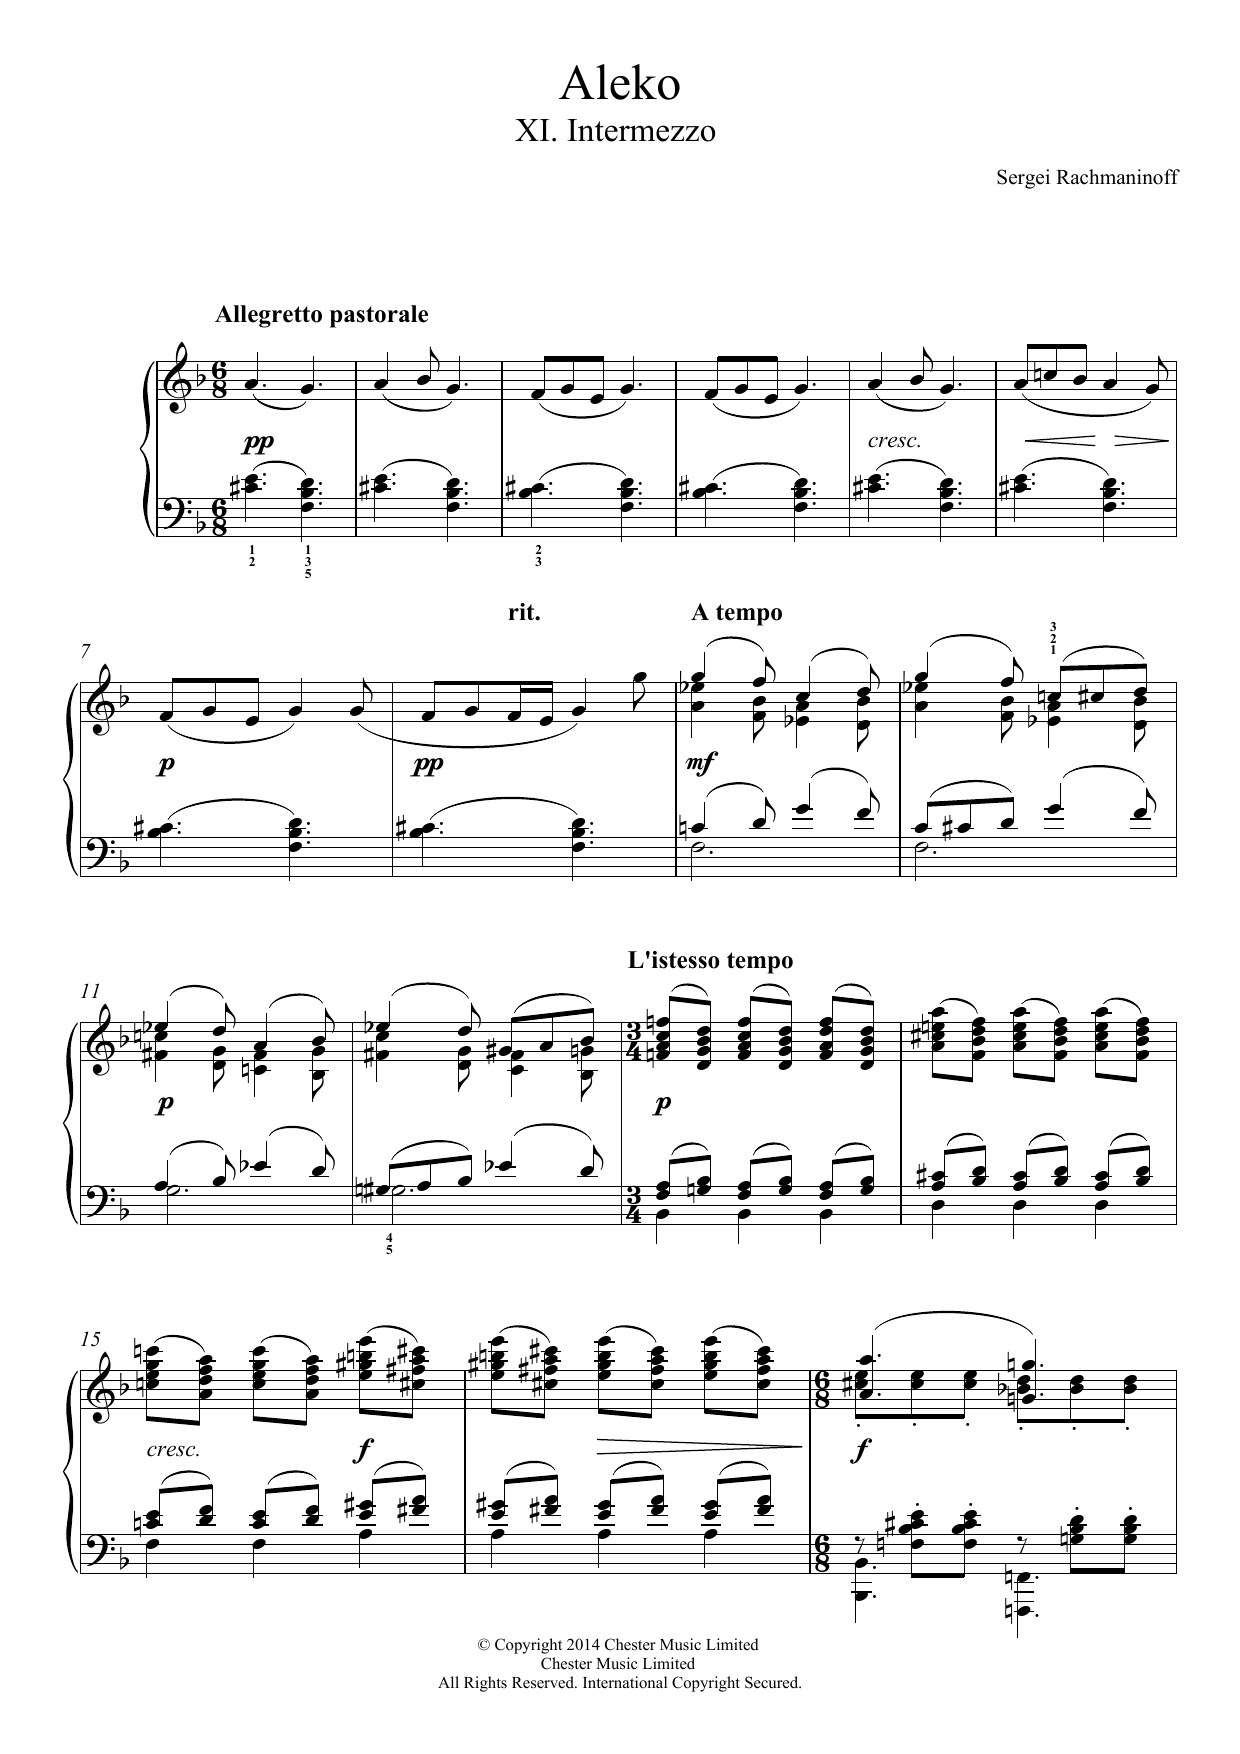 Download Sergei Rachmaninoff Aleko - No.11 Intermezzo Sheet Music